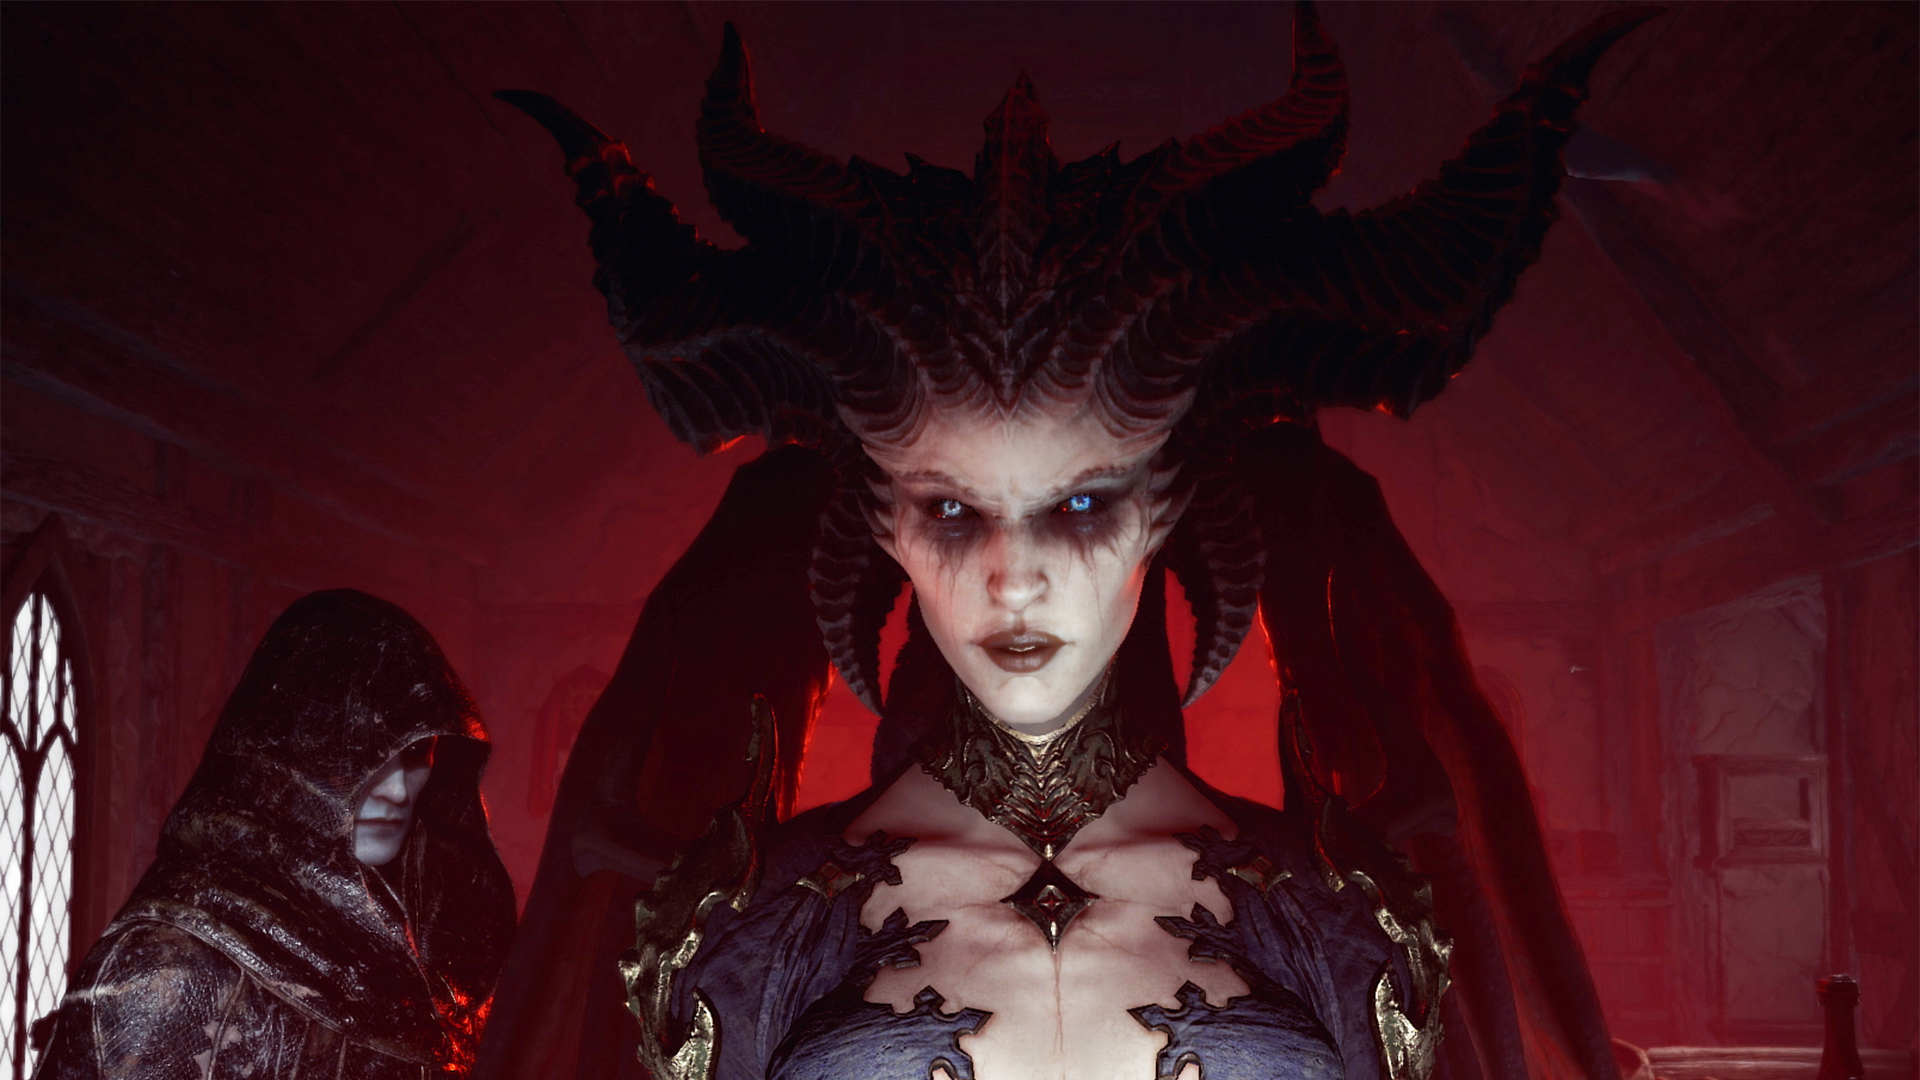  Diablo 4 is coming June 6, 2023 